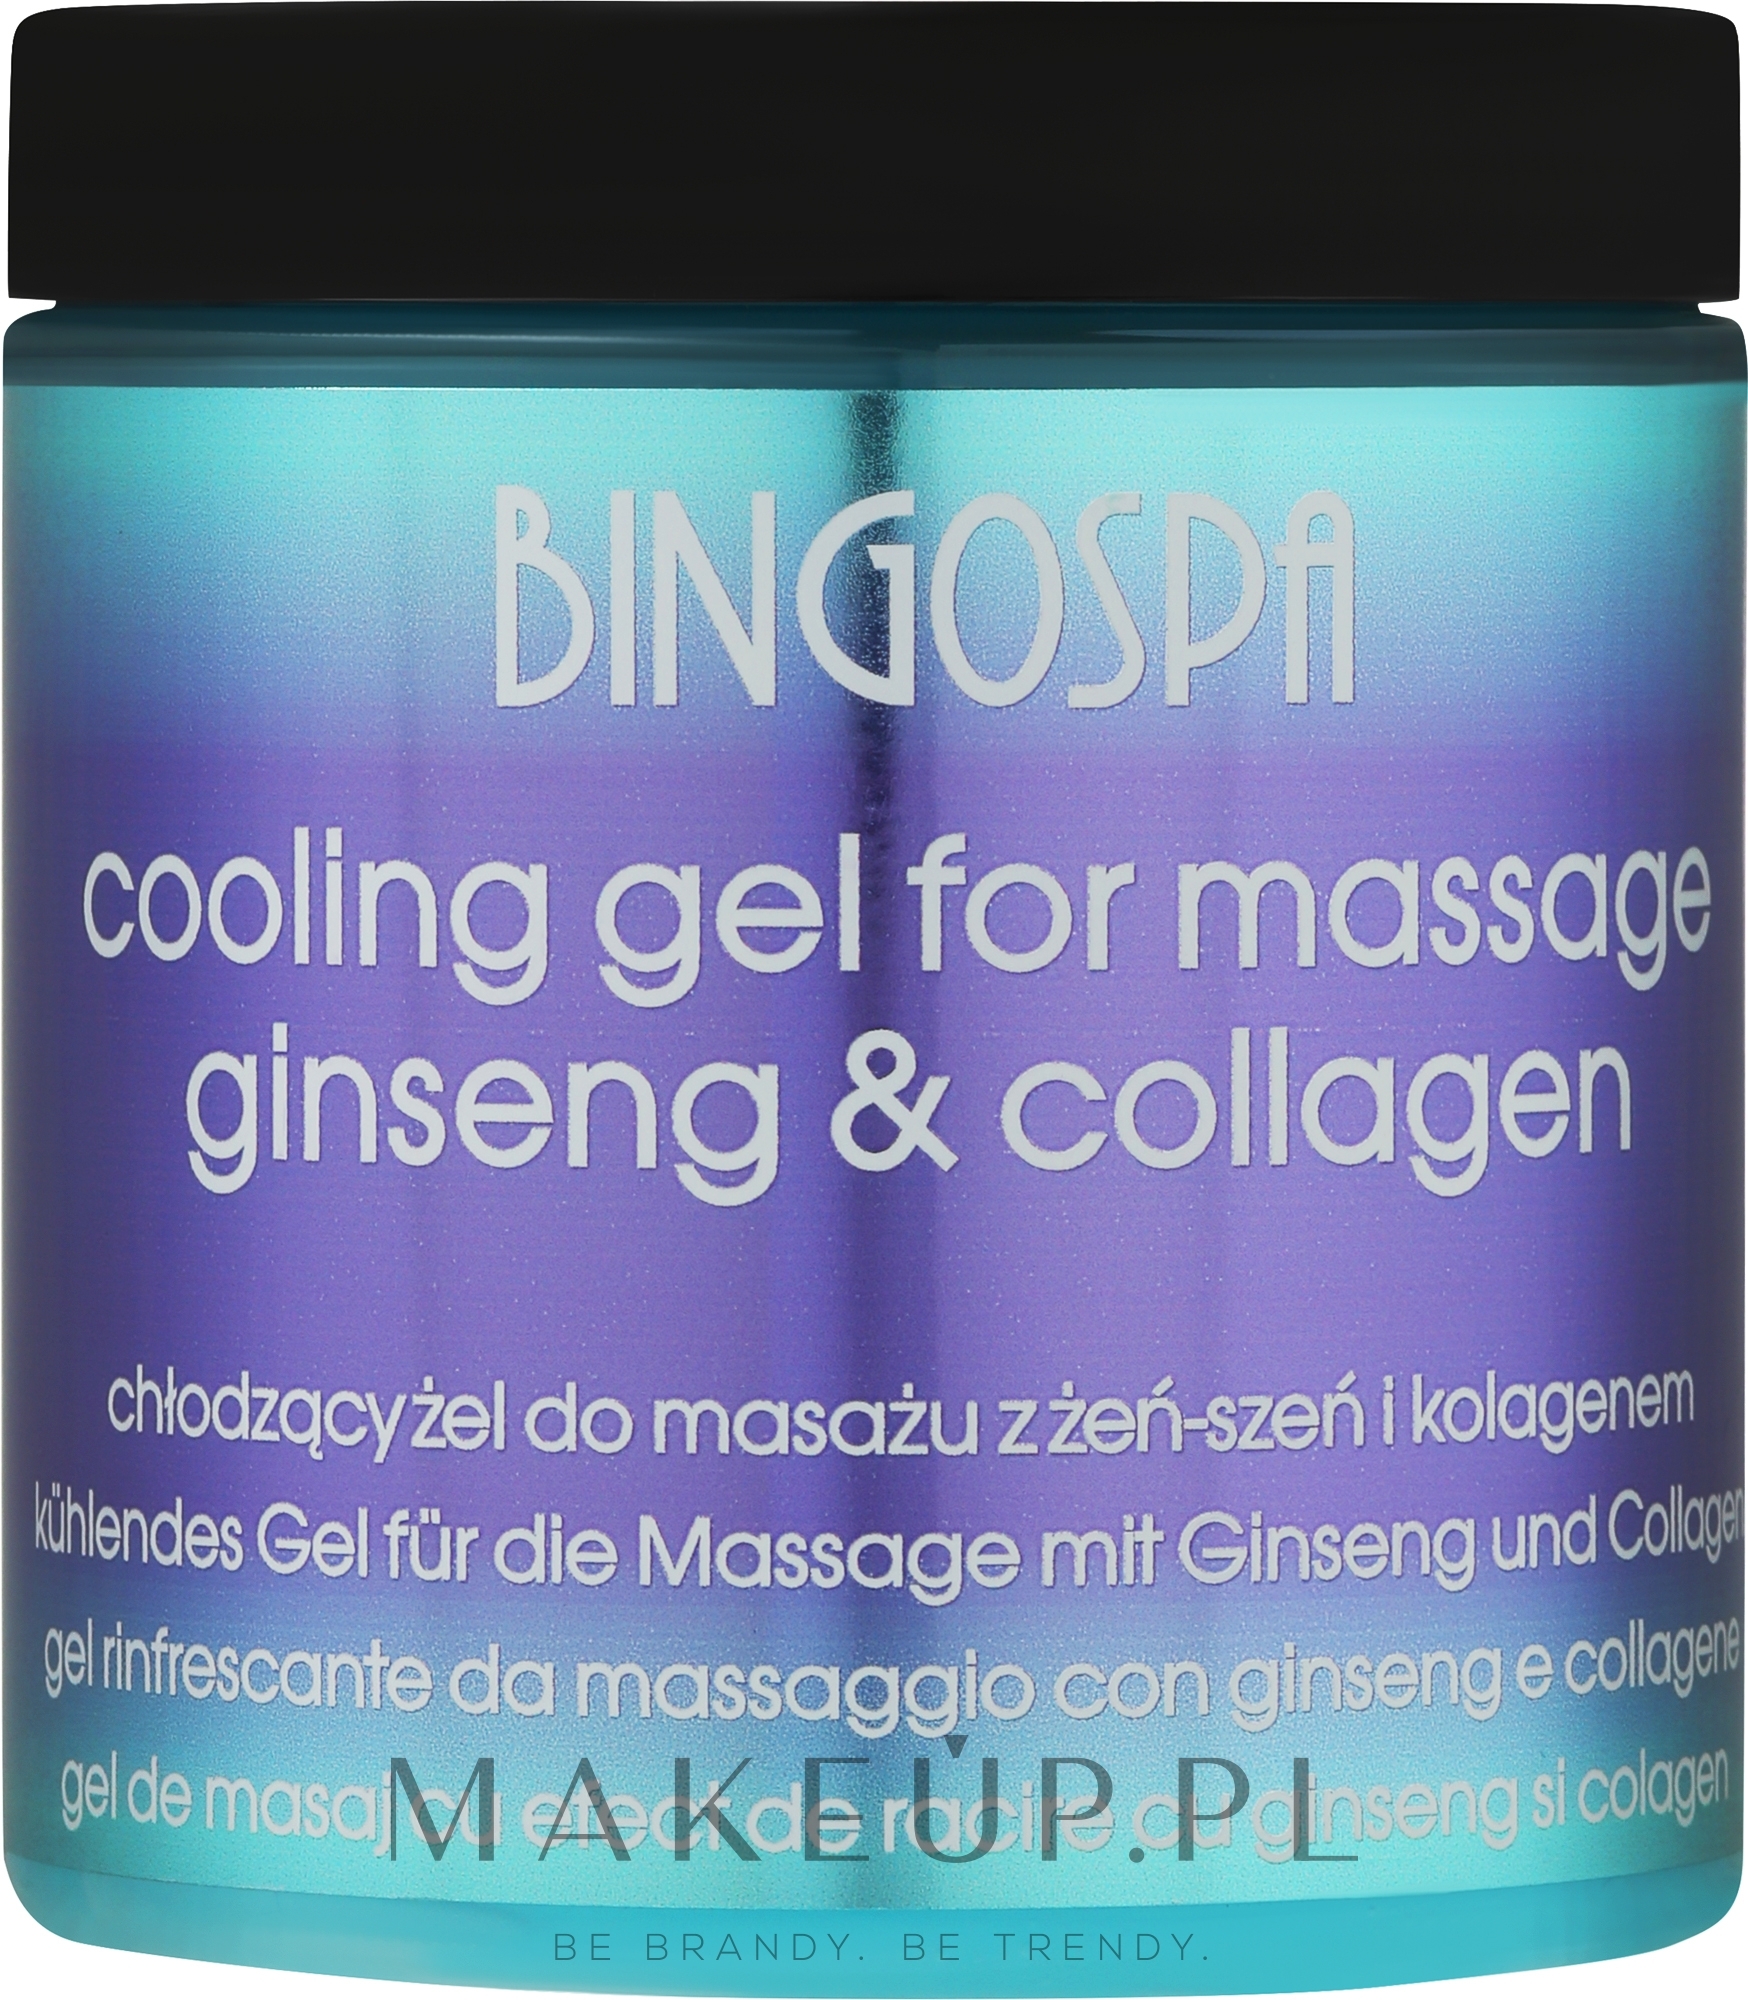 Chłodzący żel do masażu wzbogacony żeń-szeniem i kolagenem - BingoSpa Massage Gel Enriched With Ginseng And Collagen — Zdjęcie 250 g